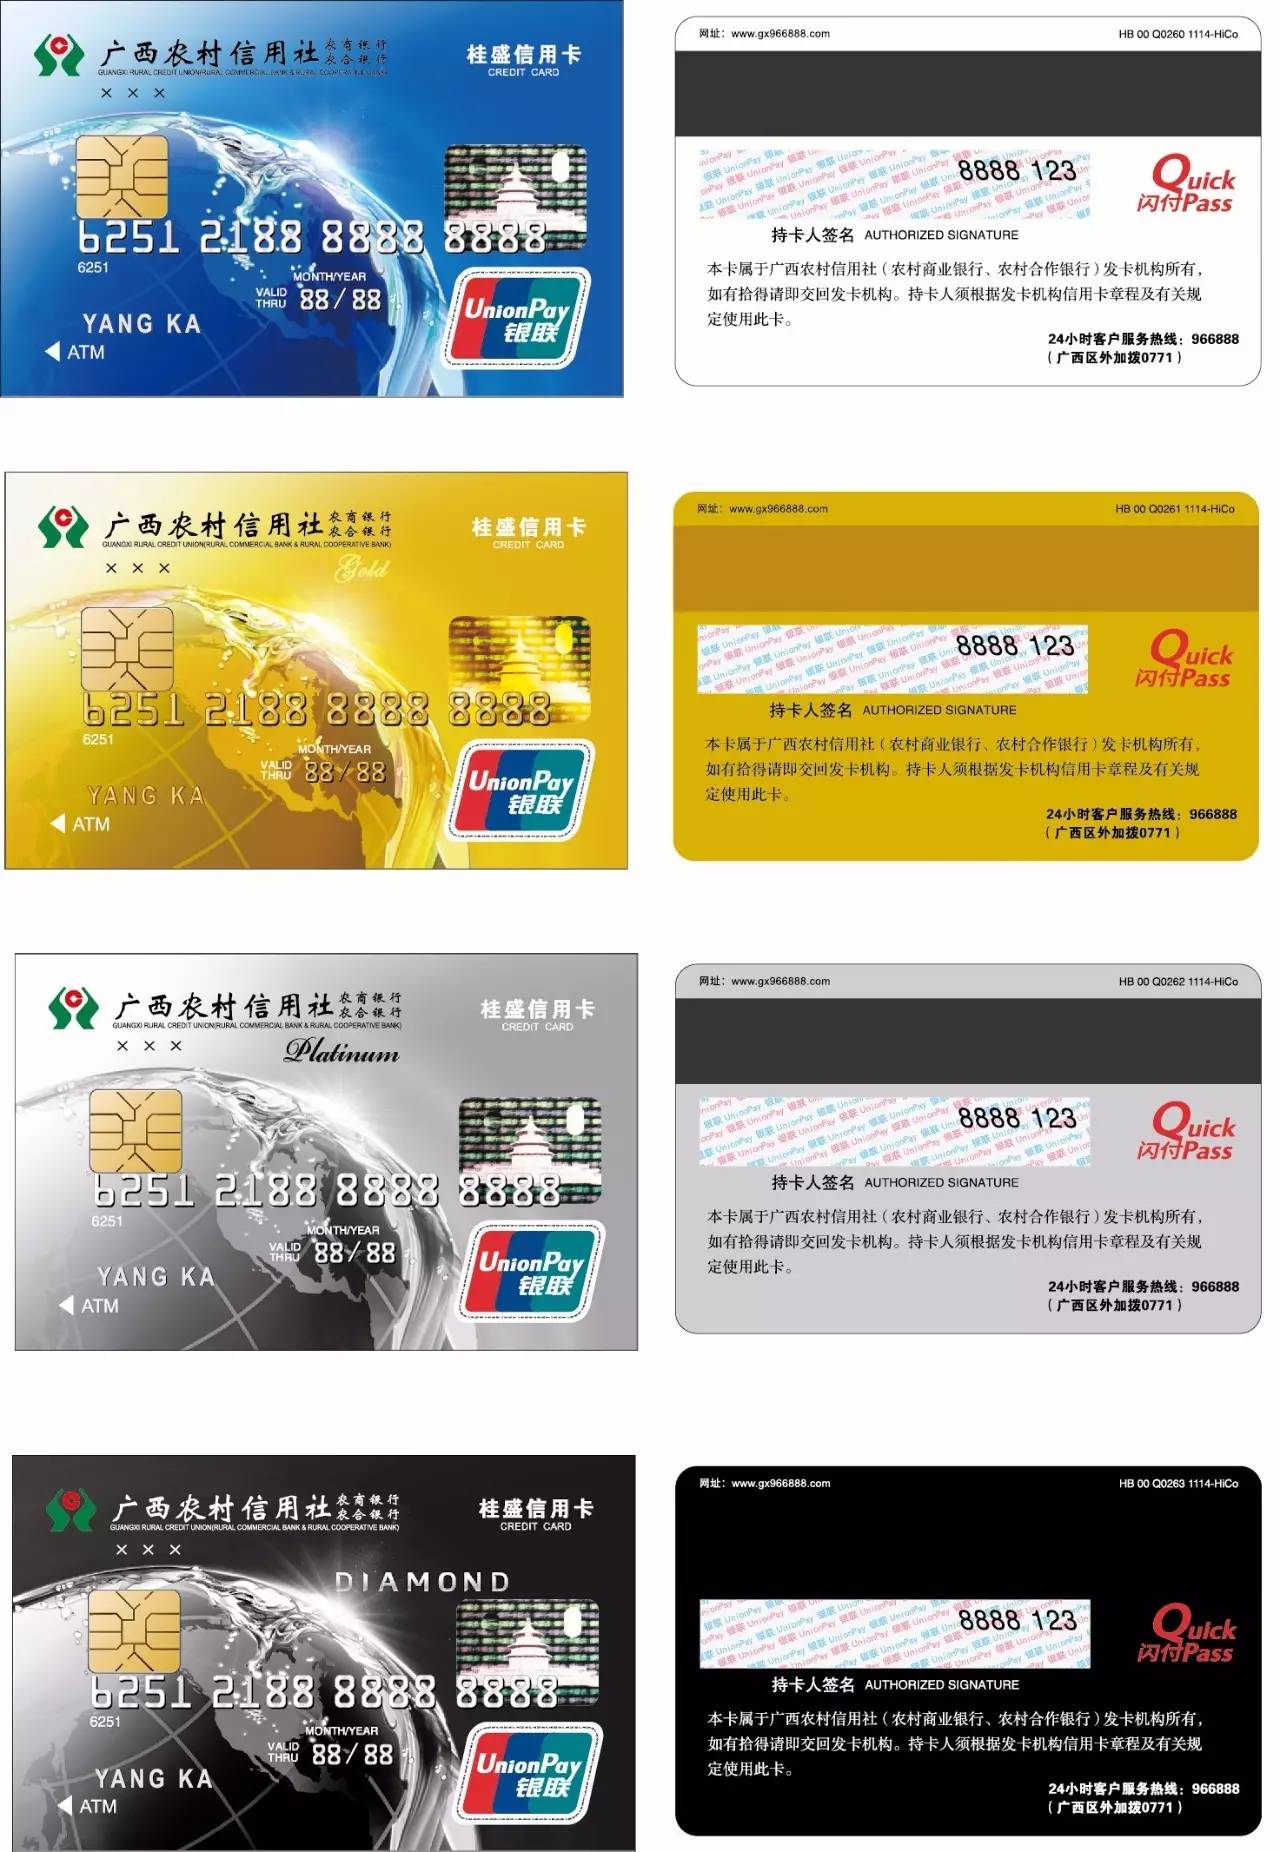 微信绑定信用卡哦嚯嚯岑溪农商银行的信用卡可以在微信上绑定啦日常